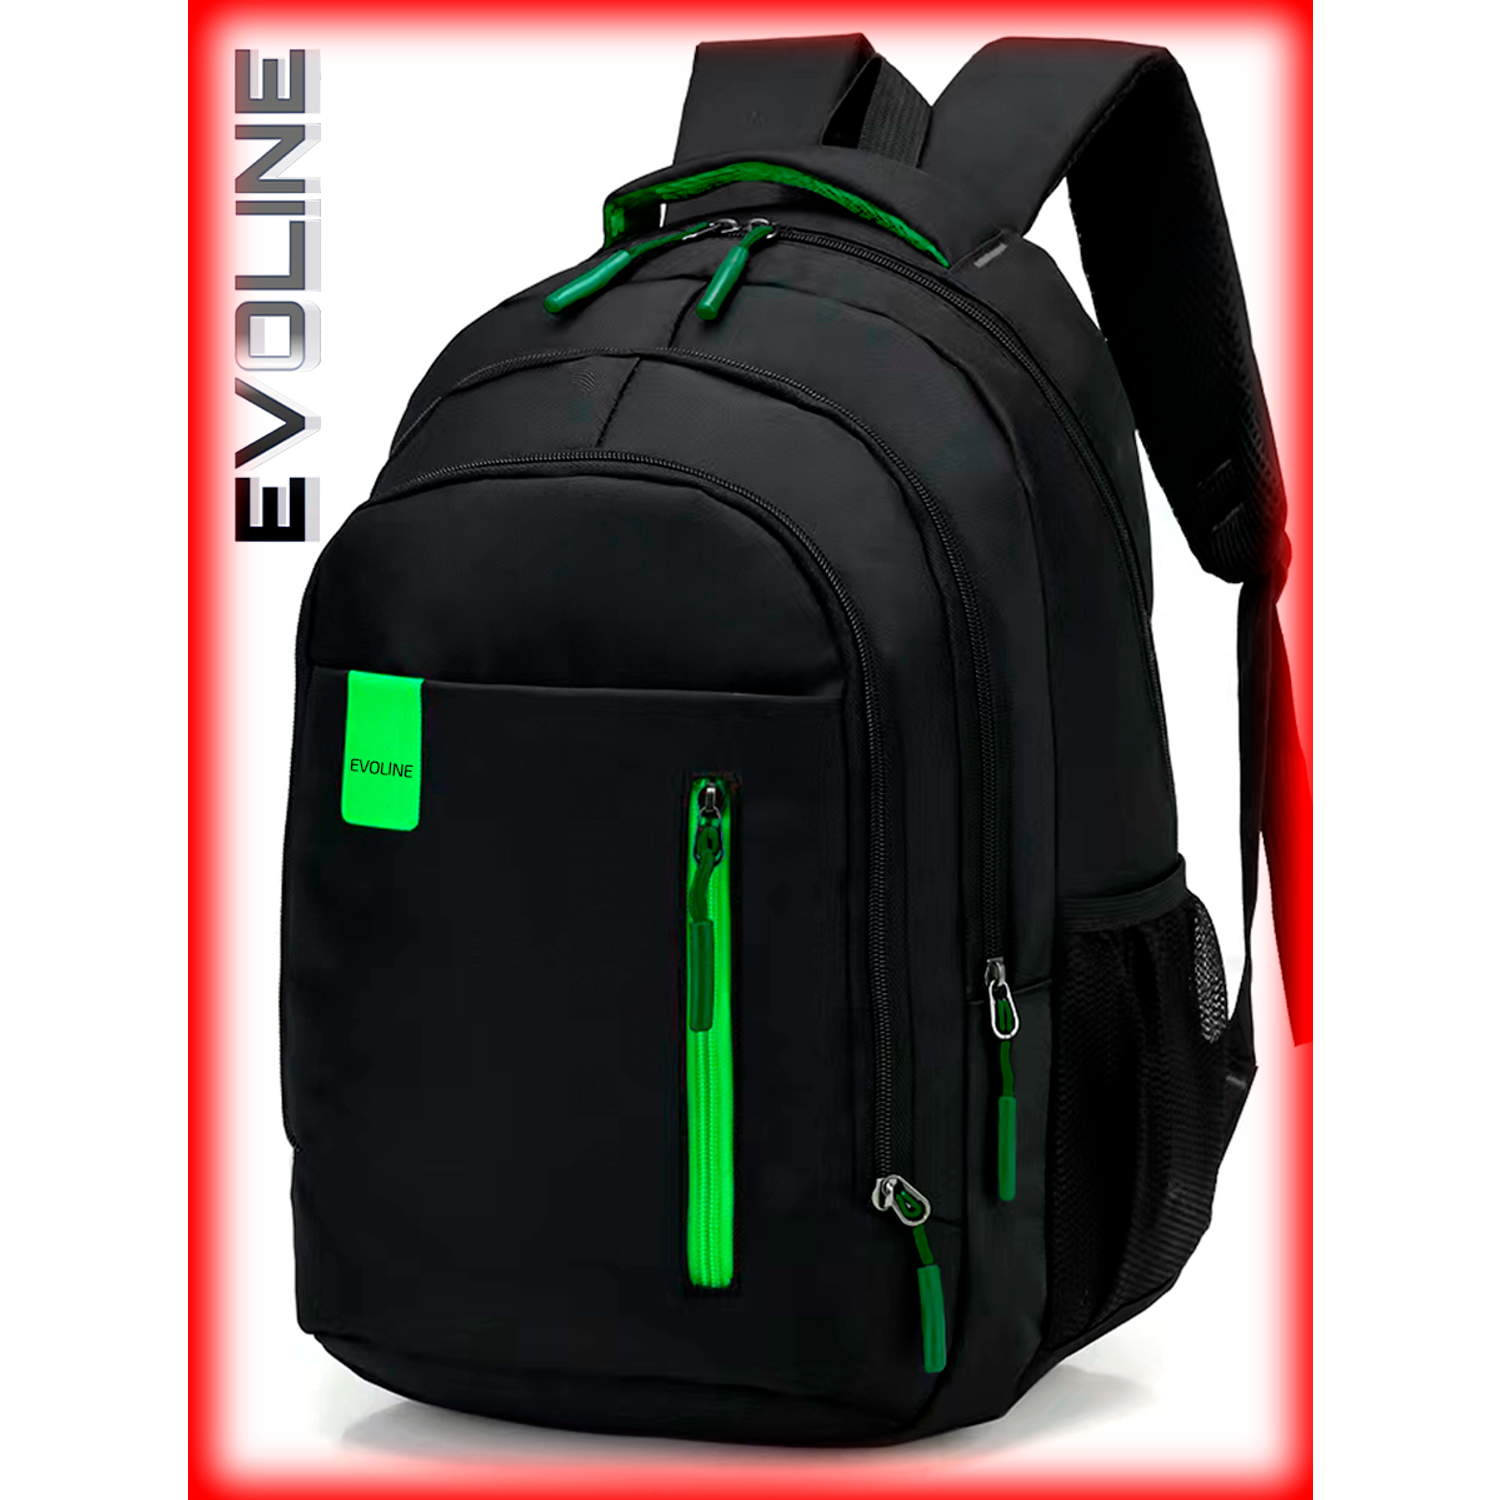 Рюкзак школьный Evoline Черный зеленый EVO-331-41 - фото 8